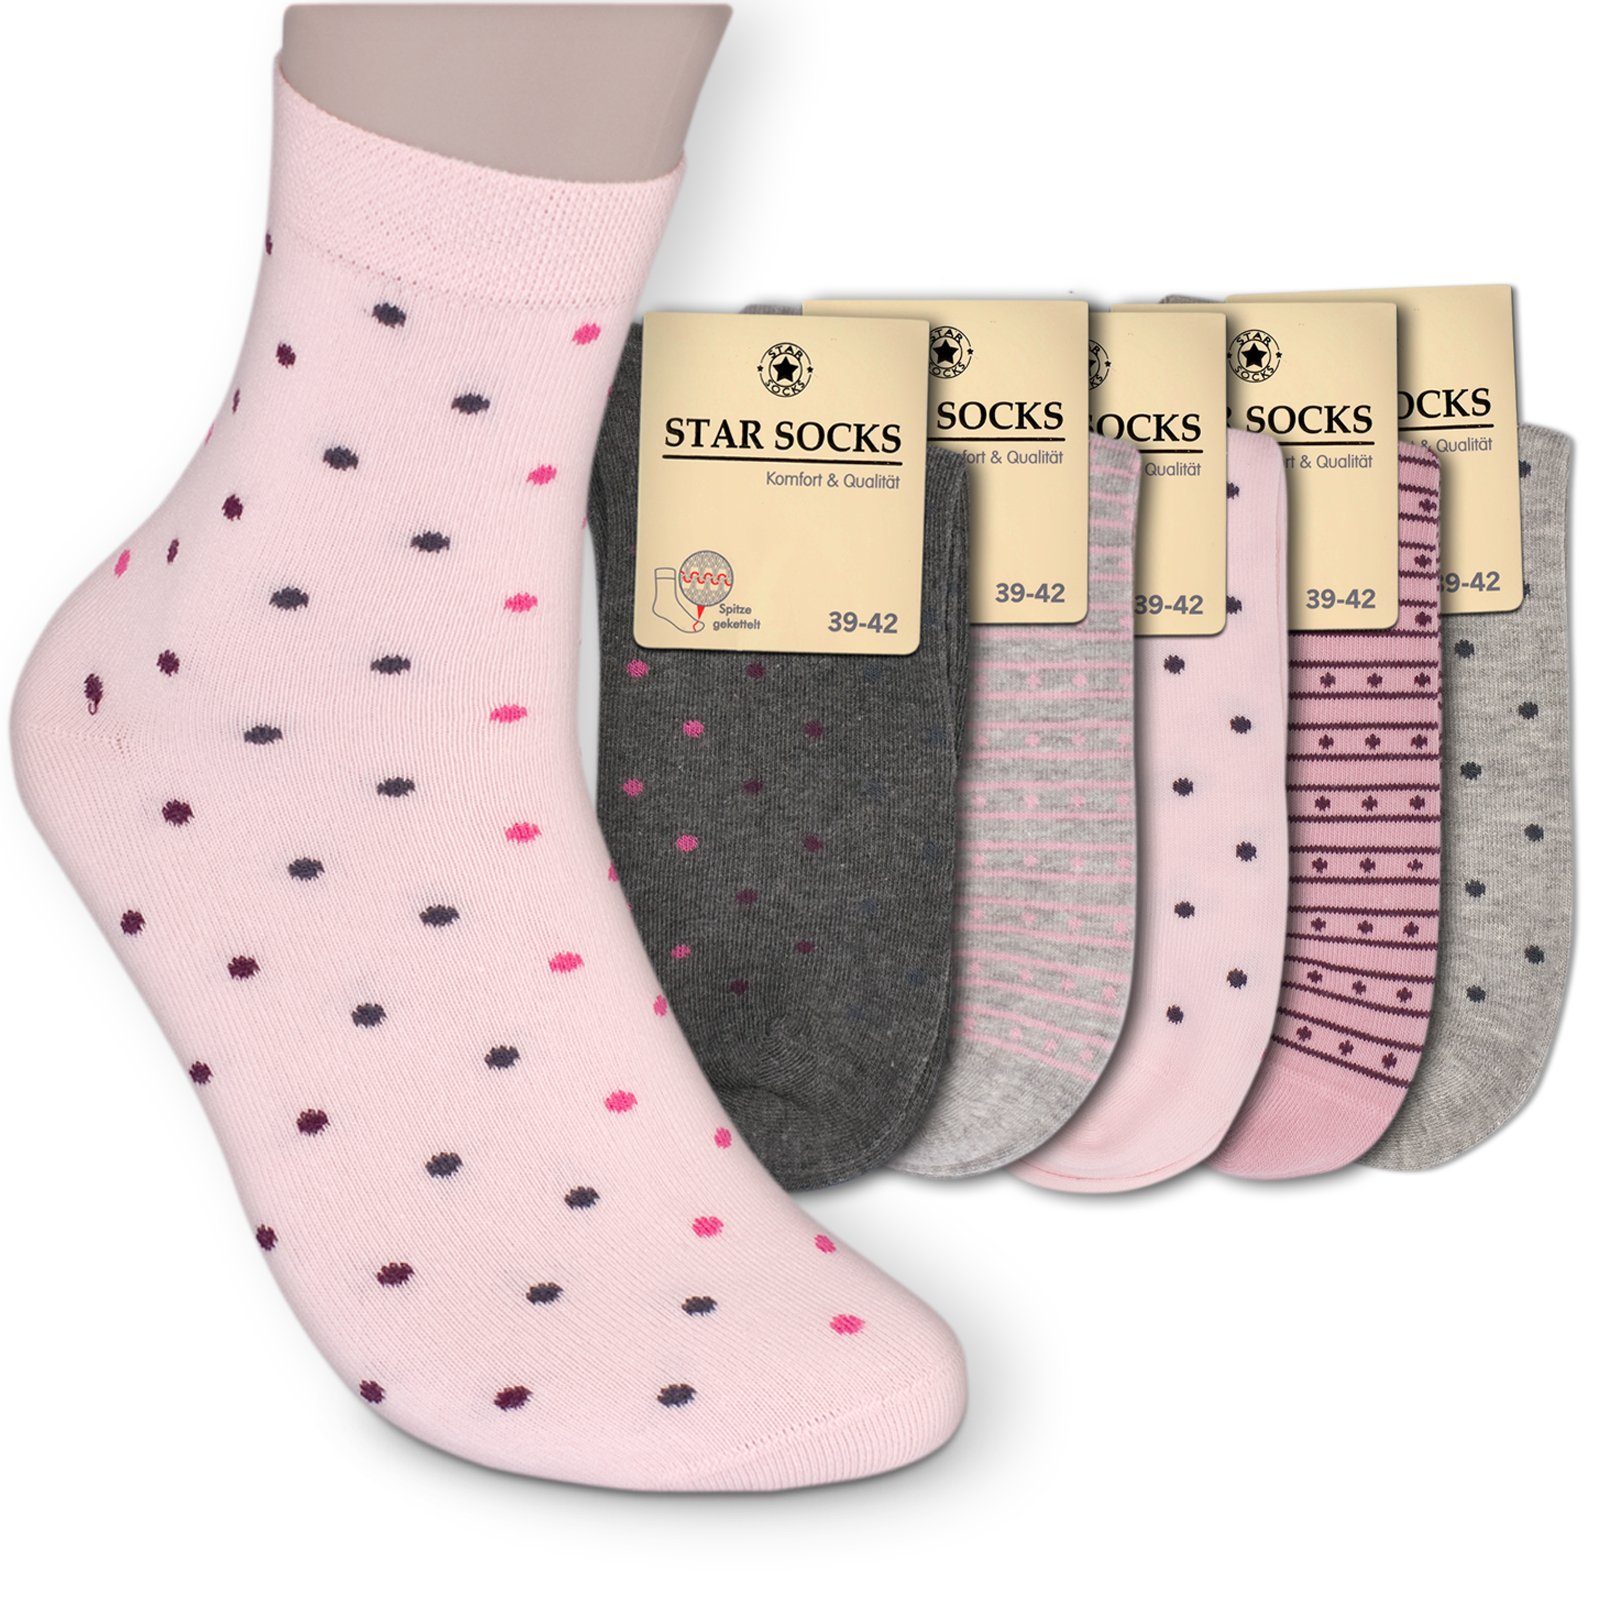 Gummi (Bund, 5-Paar, rosa Kurzsocken grau) mit Komfortbund Die WELLNESS ohne Sockenbude